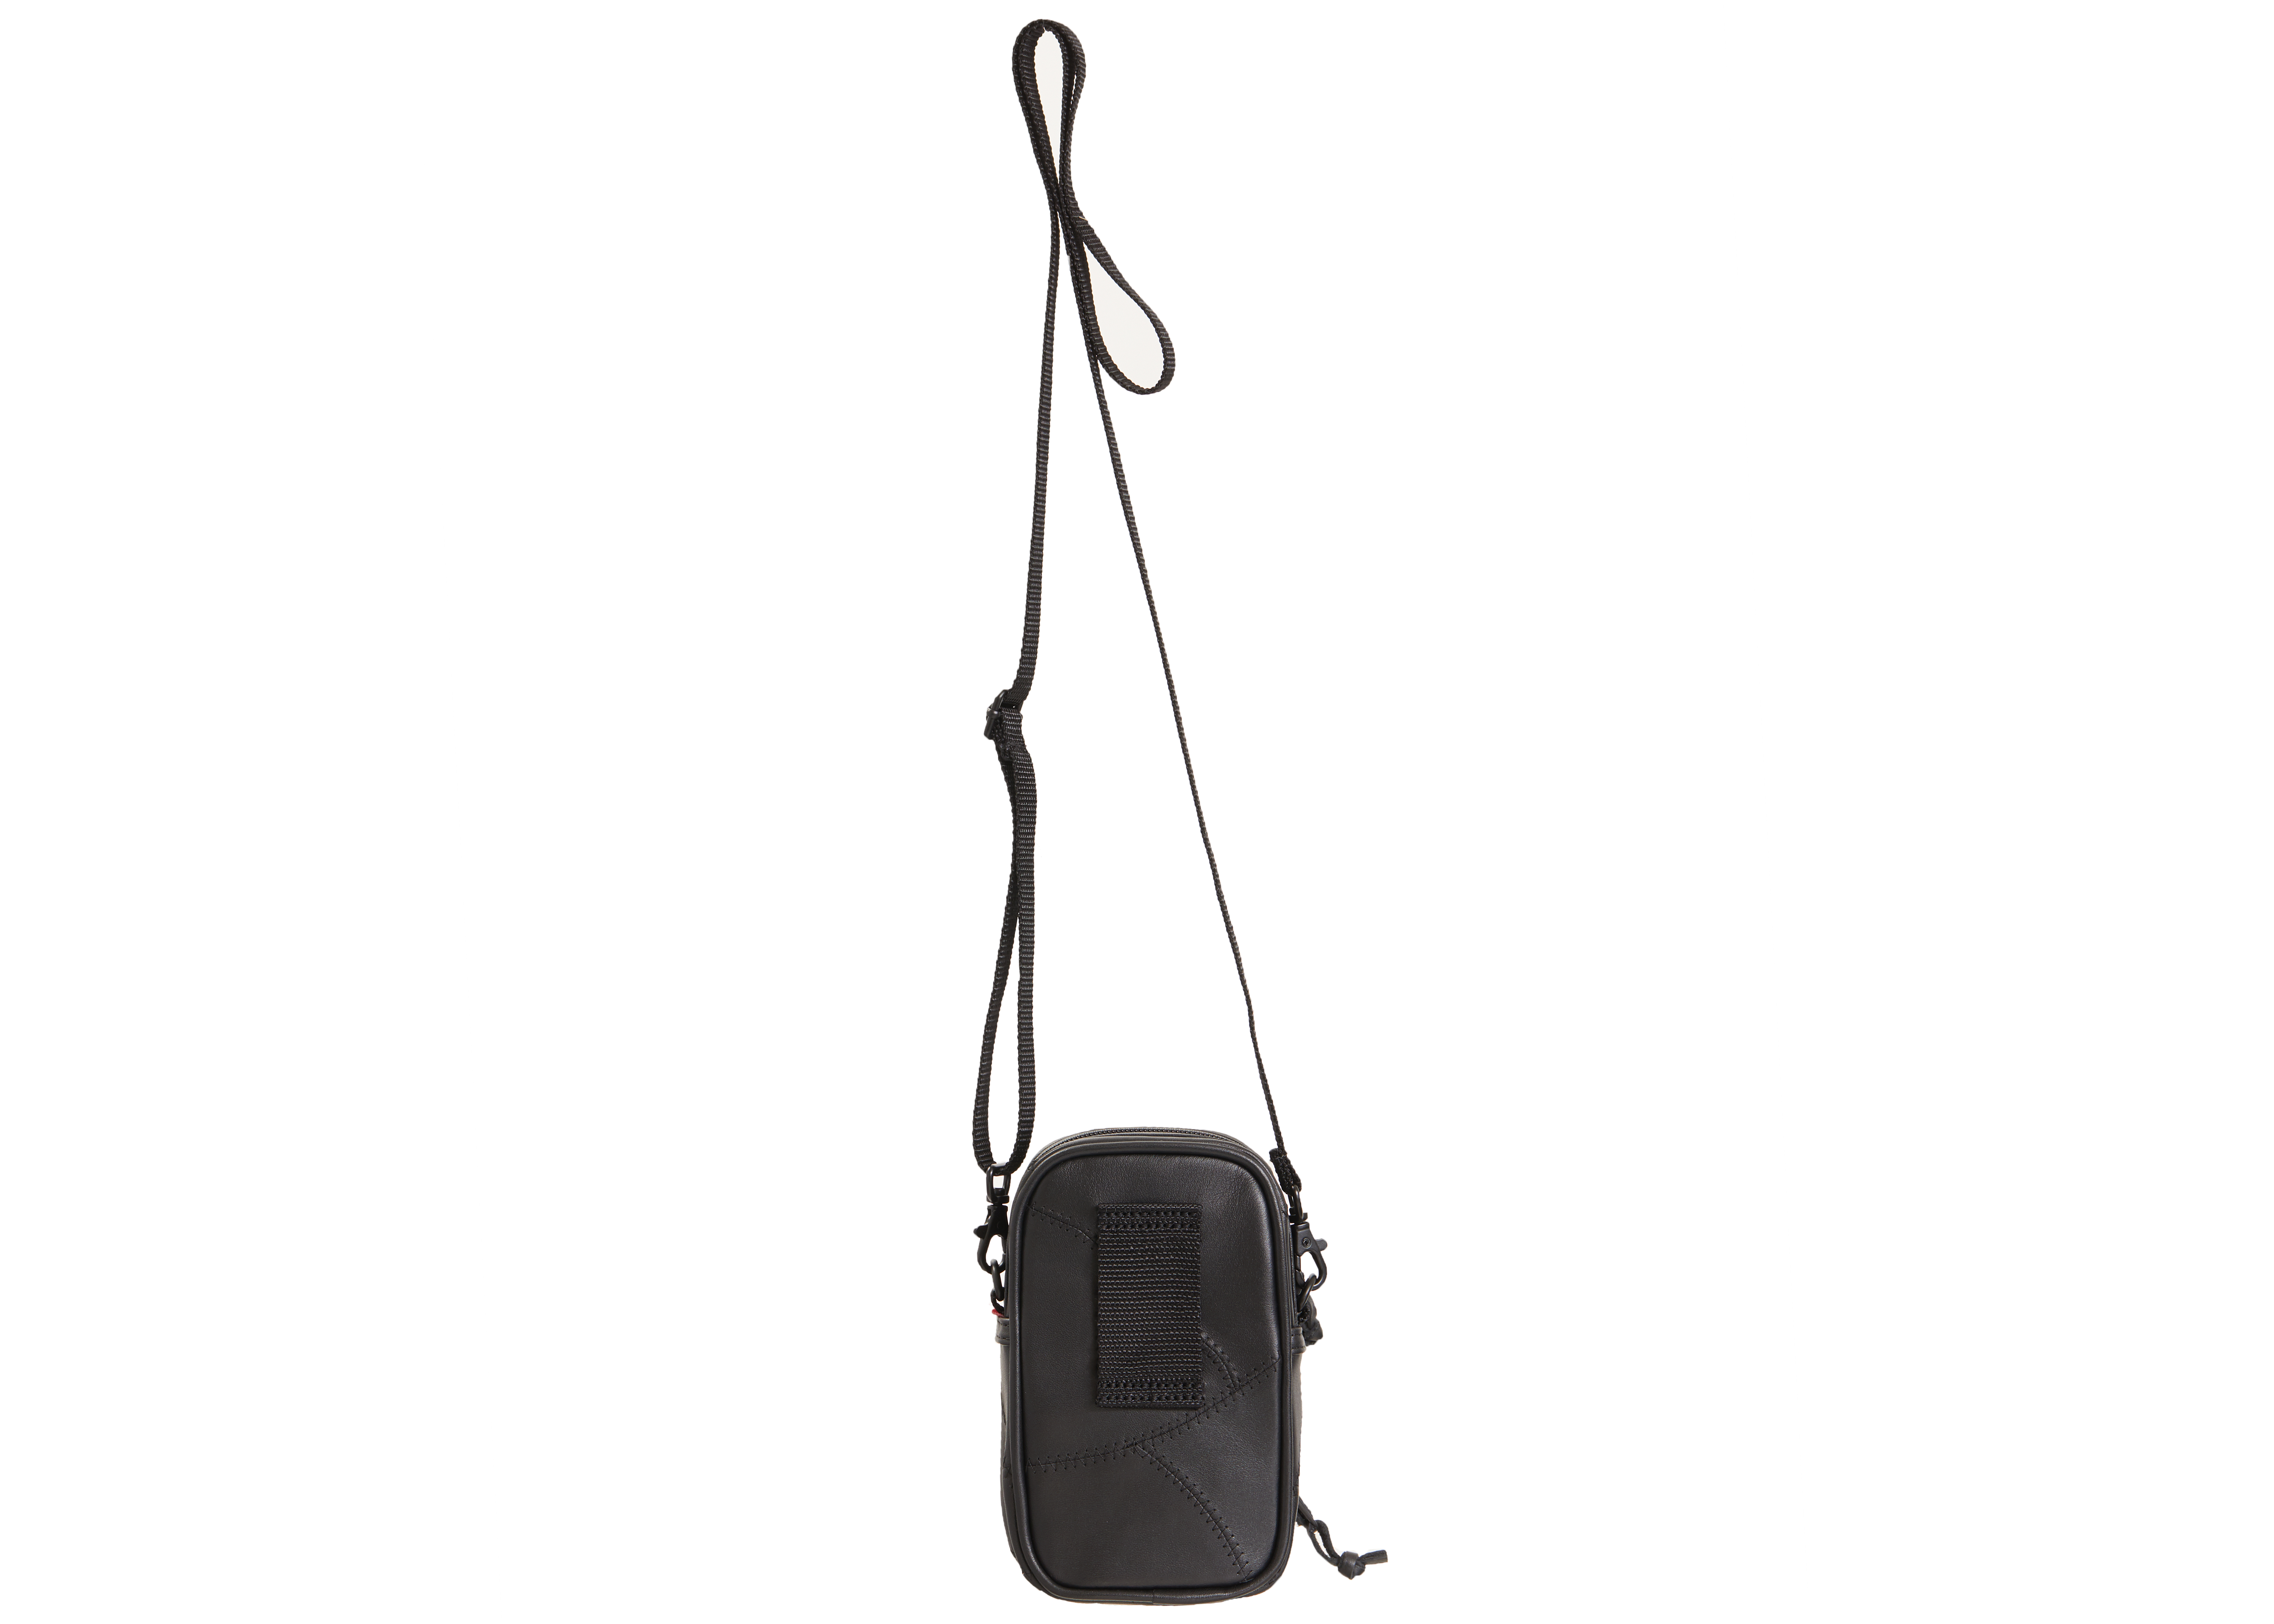 Supreme Patchwork Leather Small Shoulder Bag Black - Novelship